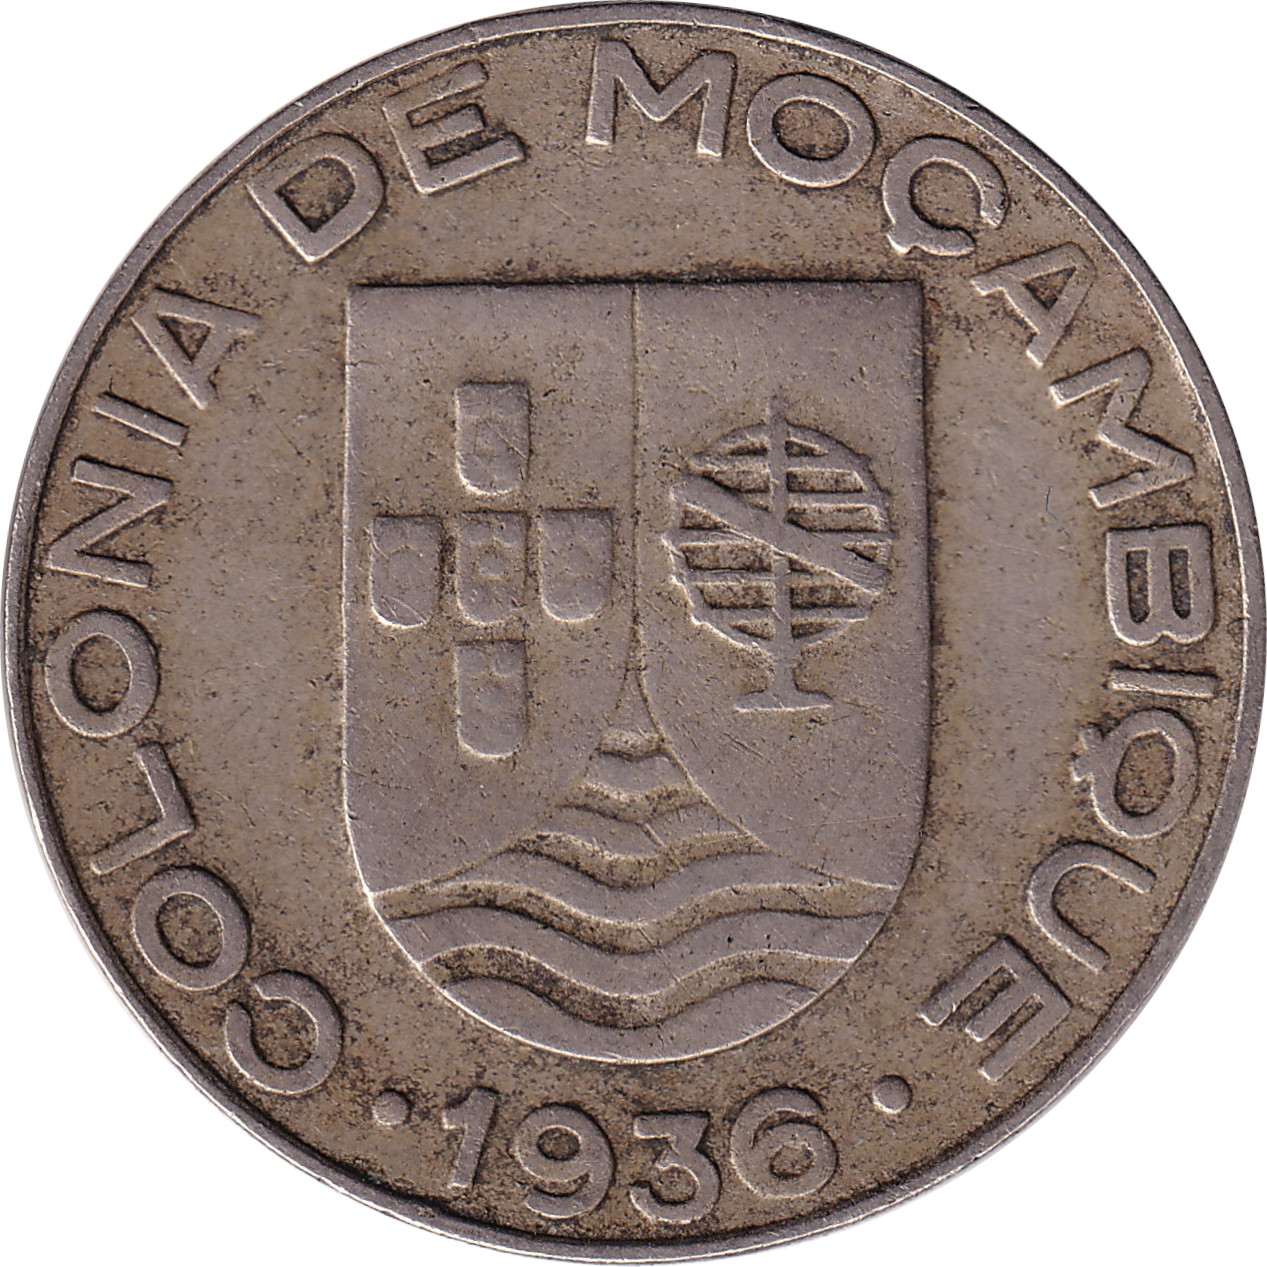 1 escudo - Colonia de Mocambique - Grand blason